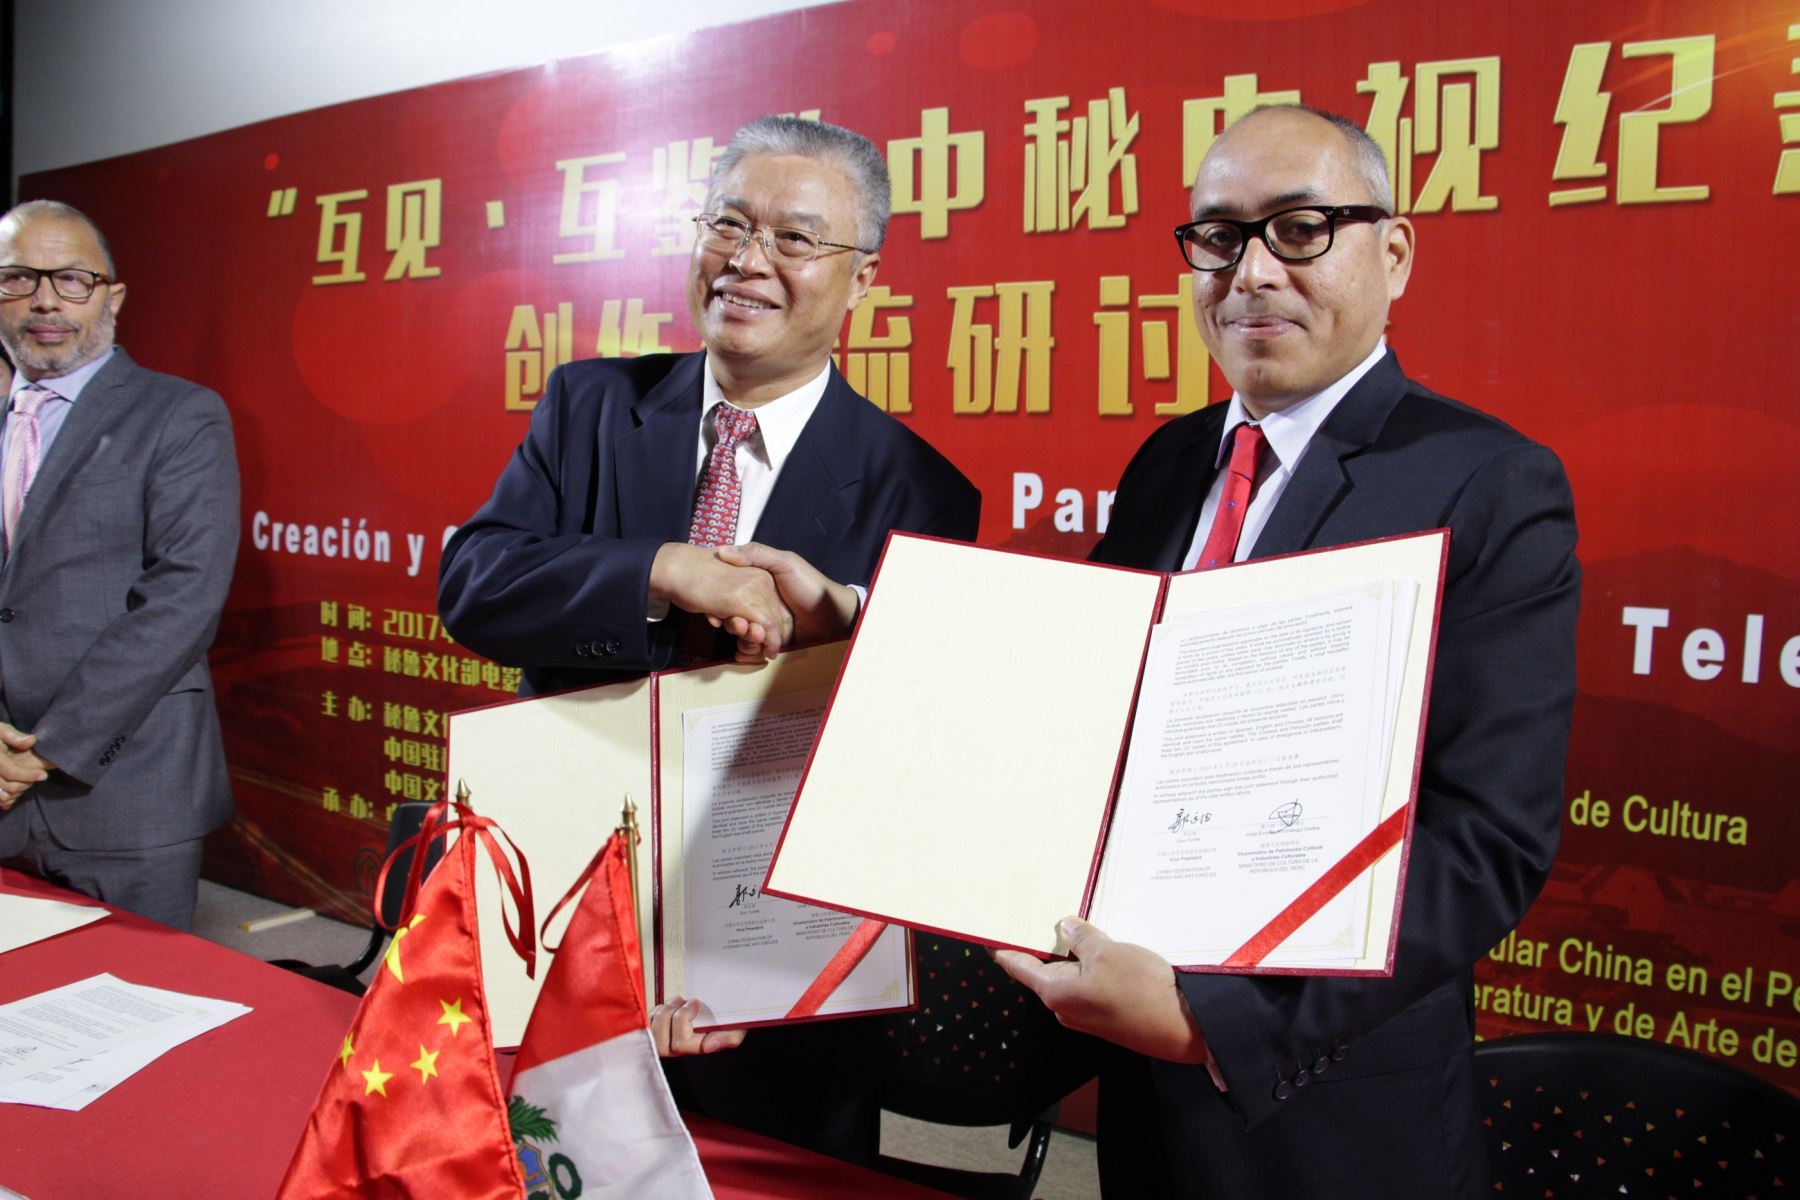 Acuerdo entre el Perú y China sobre cooperación de productos audiovisuales